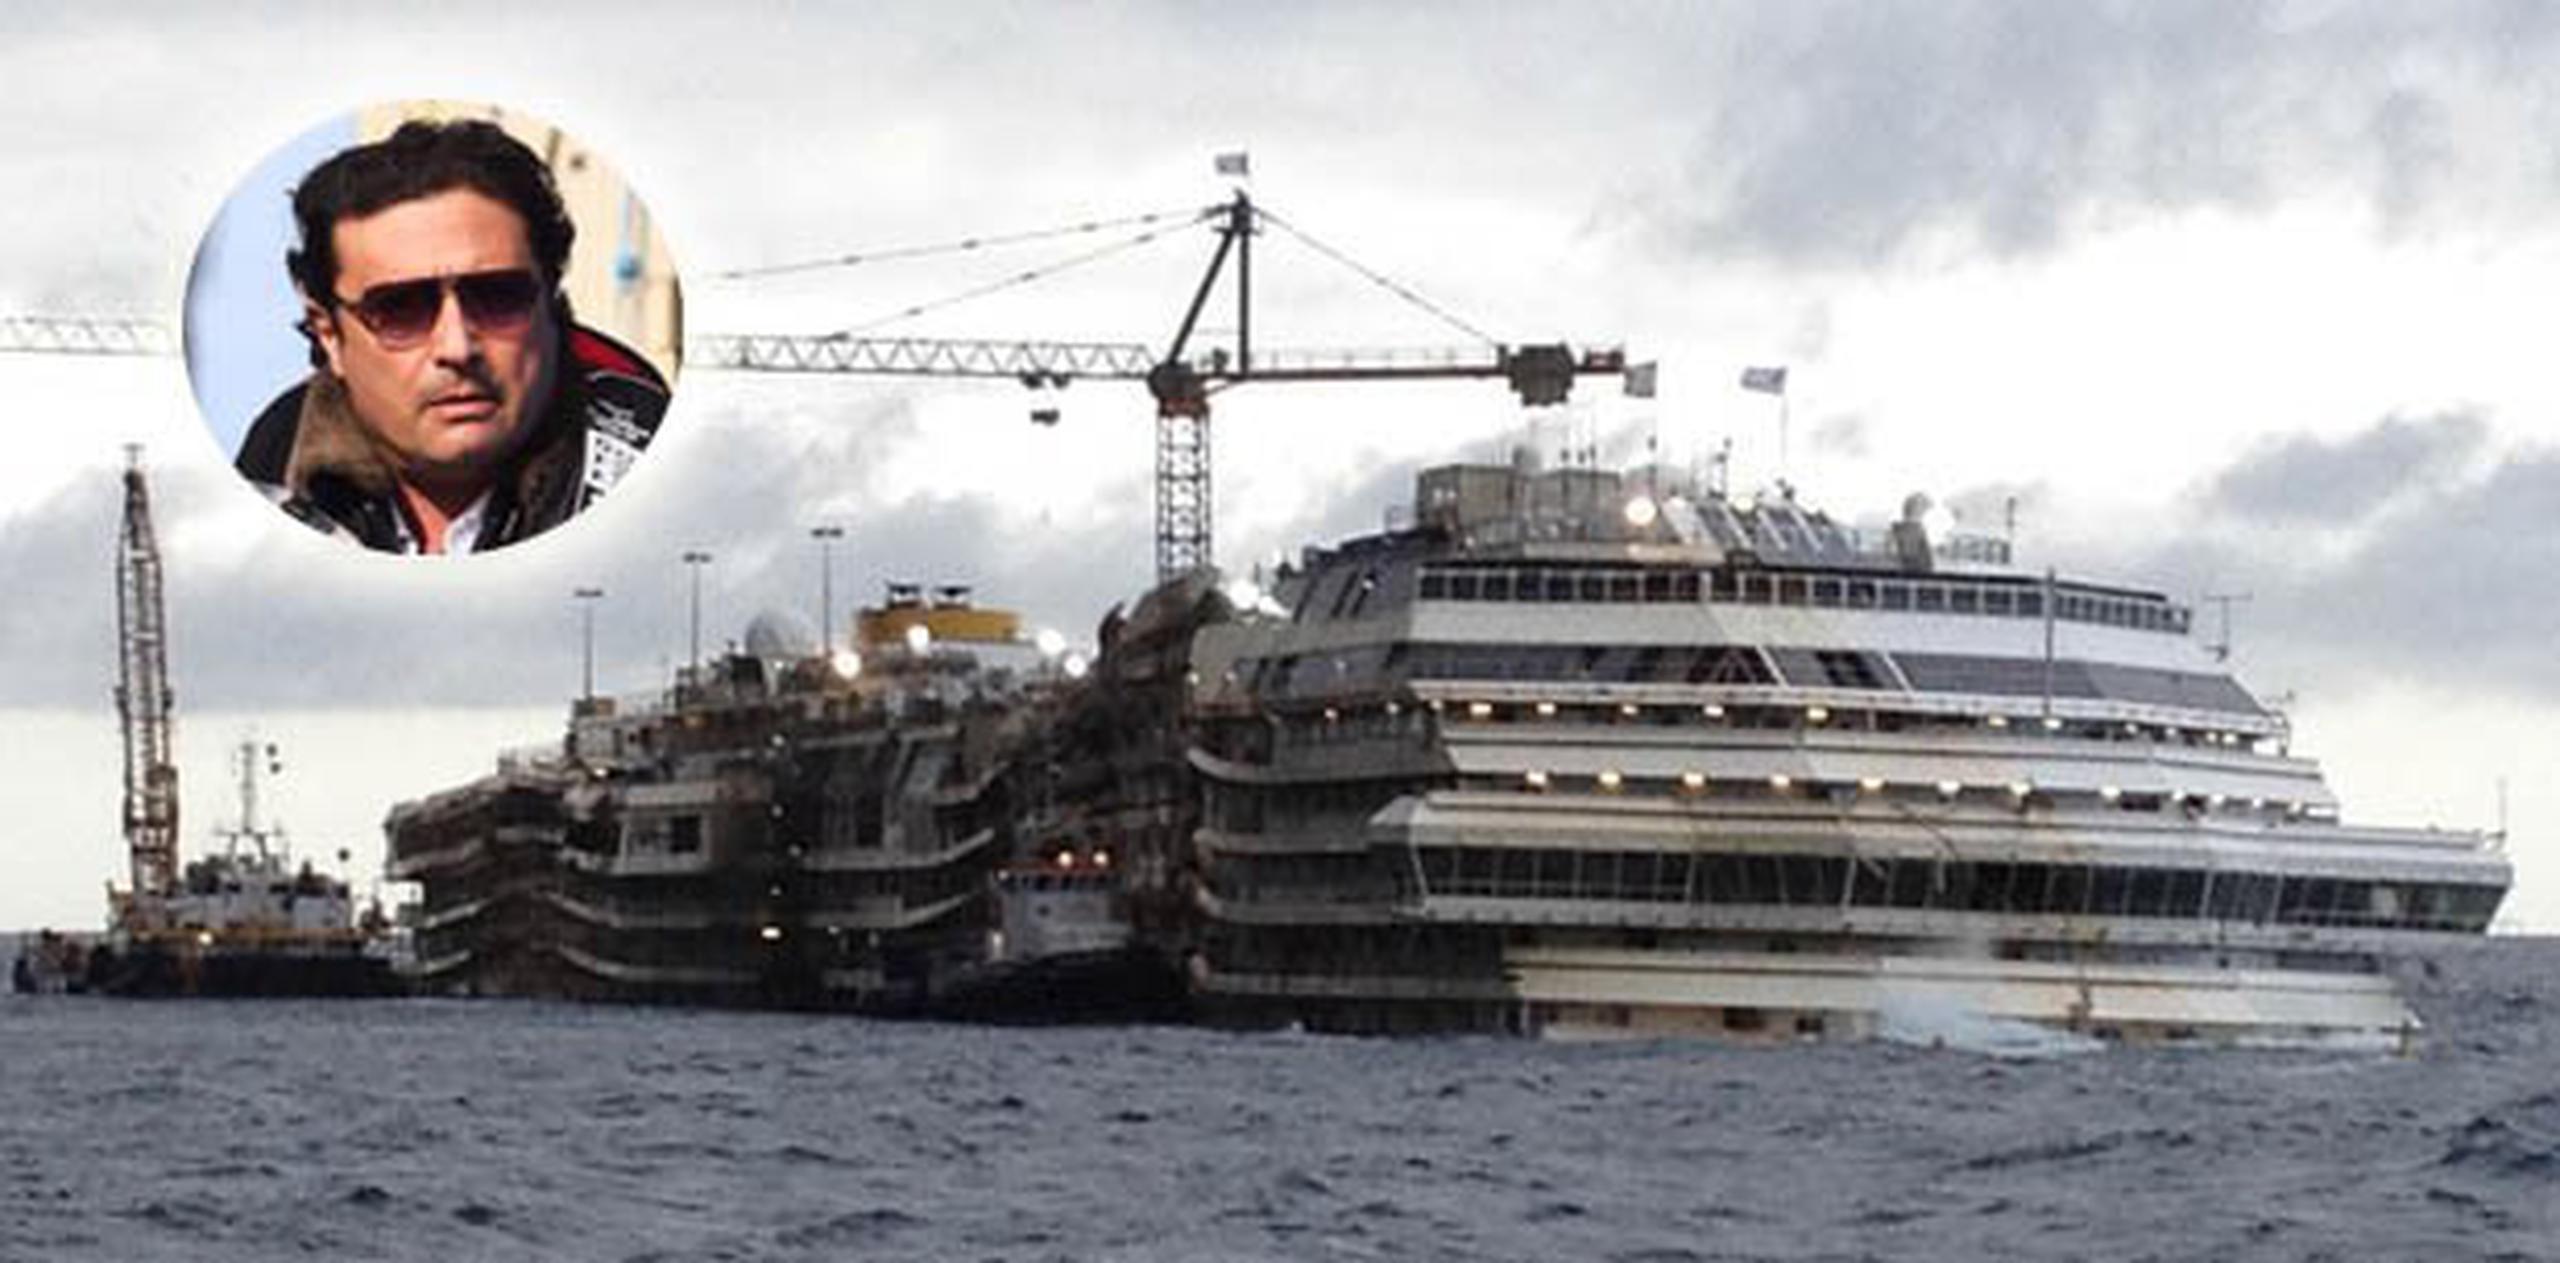 El crucero italiano "Costa Concordia" encalló frente a las costas toscanas hasta hundirse parcialmente el pasado 13 de enero de 2012, cerca de la isla de Giglio (Toscana). (Archivo)